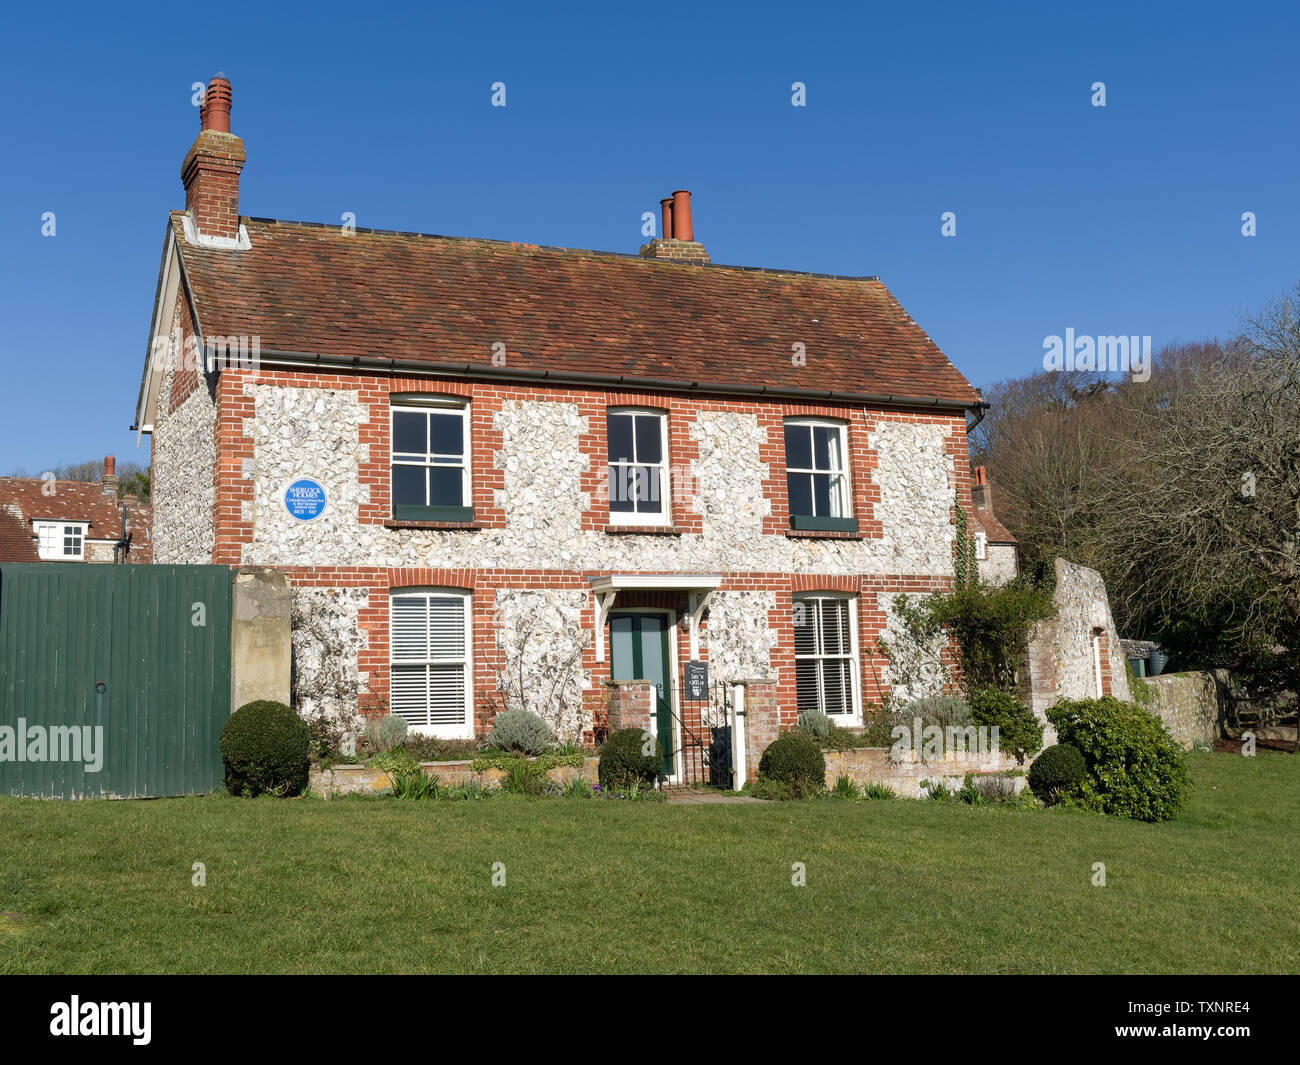 Maison de retraite de Sherlock Holmes sur le village vert à East Dean près d'Eastbourne, East Sussex, Royaume-Uni. Banque D'Images